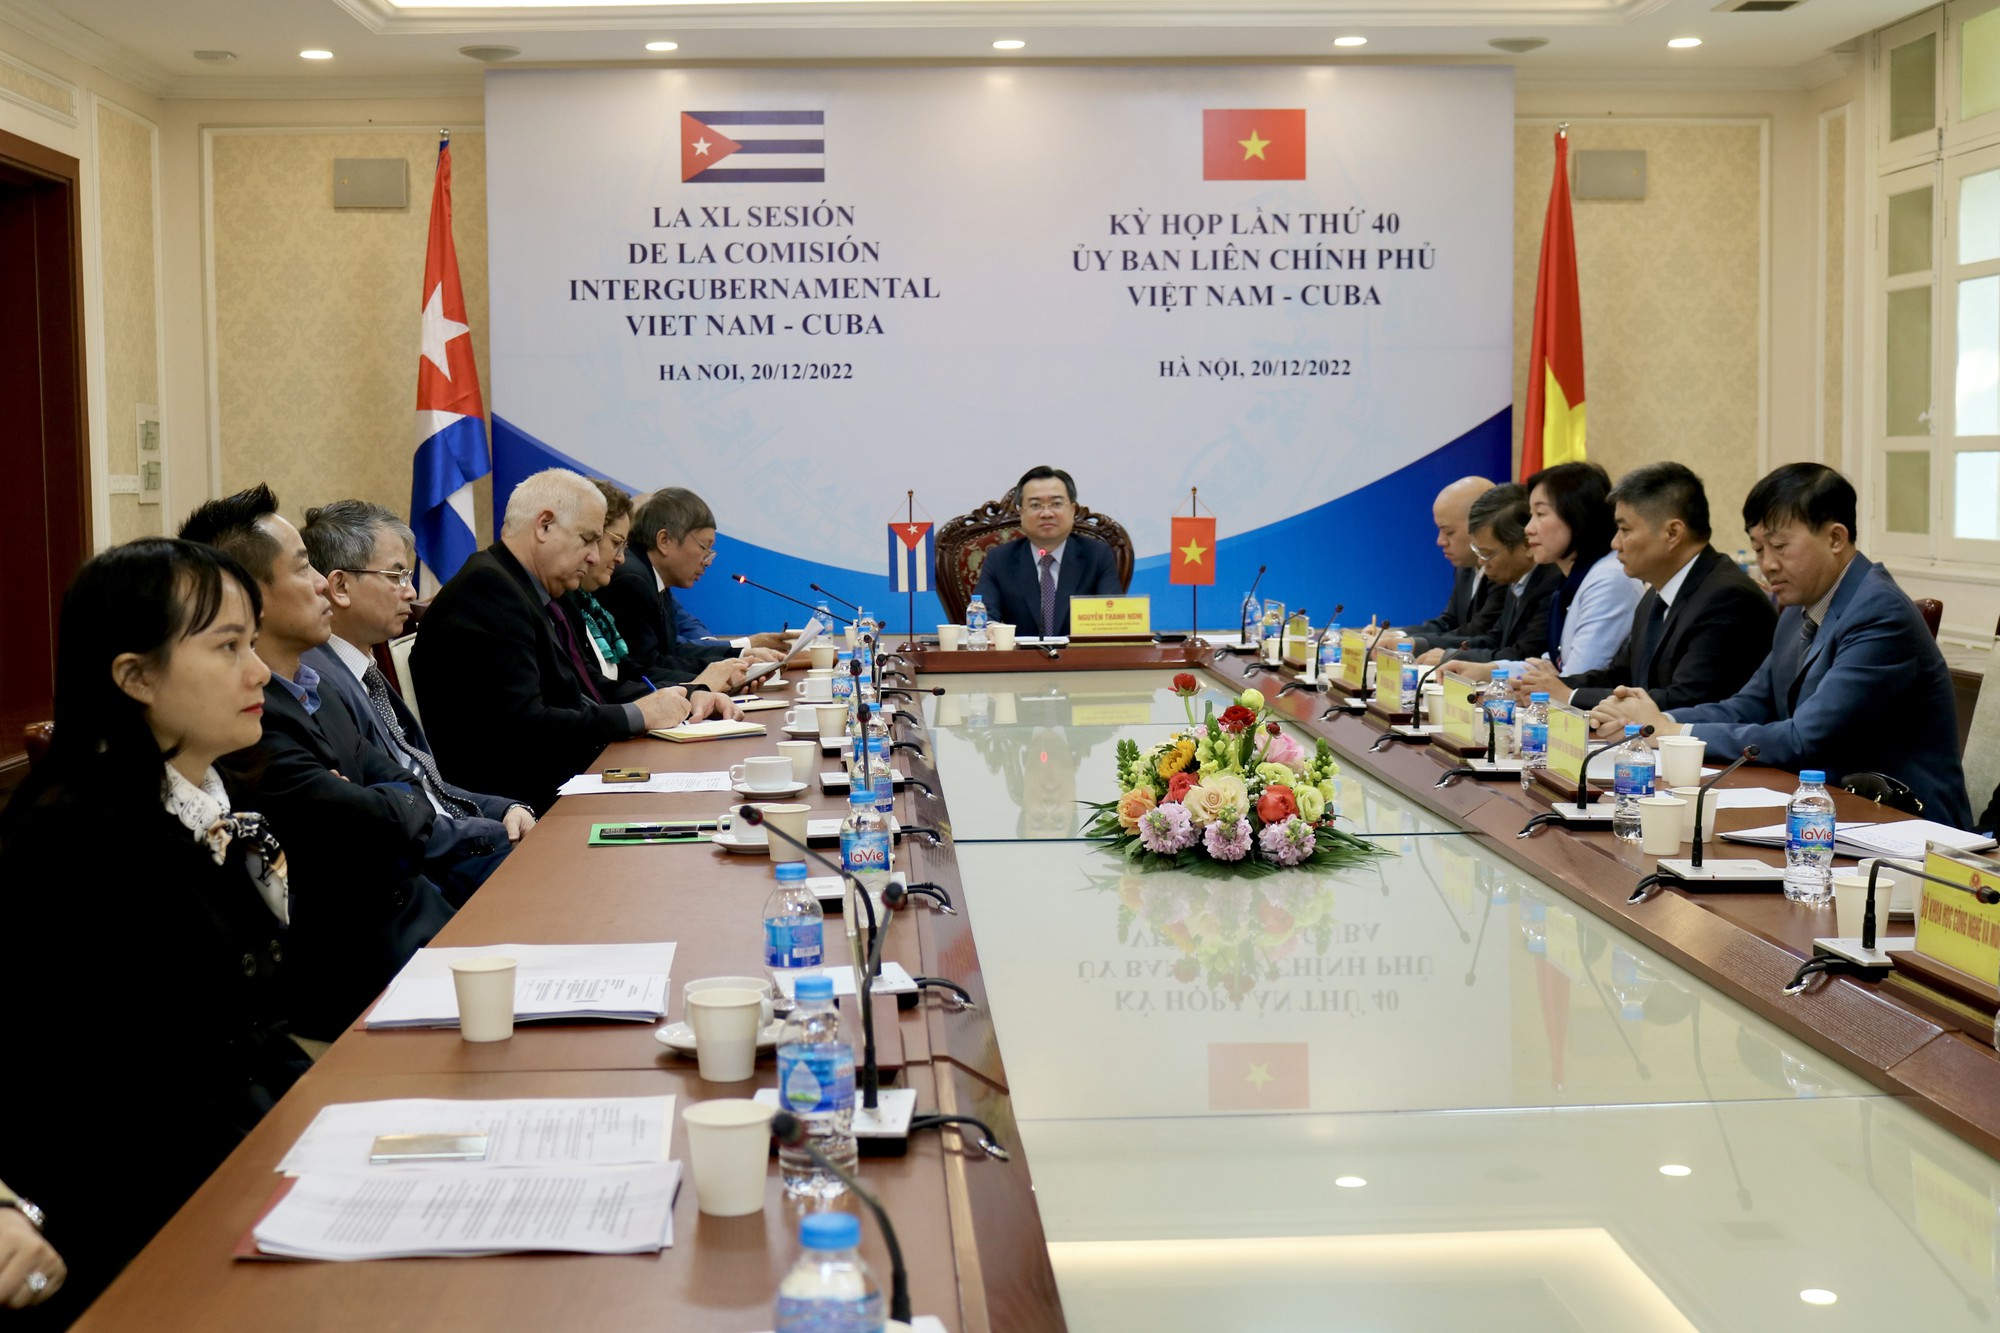 Uỷ ban liên Chính phủ Việt Nam - Cuba - Tình hữu nghị đang được tăng cường và phát triển ngày càng rộng lớn. Khám phá hình ảnh để cảm nhận sự đoàn kết, gắn bó giữa hai nước và những cơ hội hoạt động hợp tác trong tương lai.